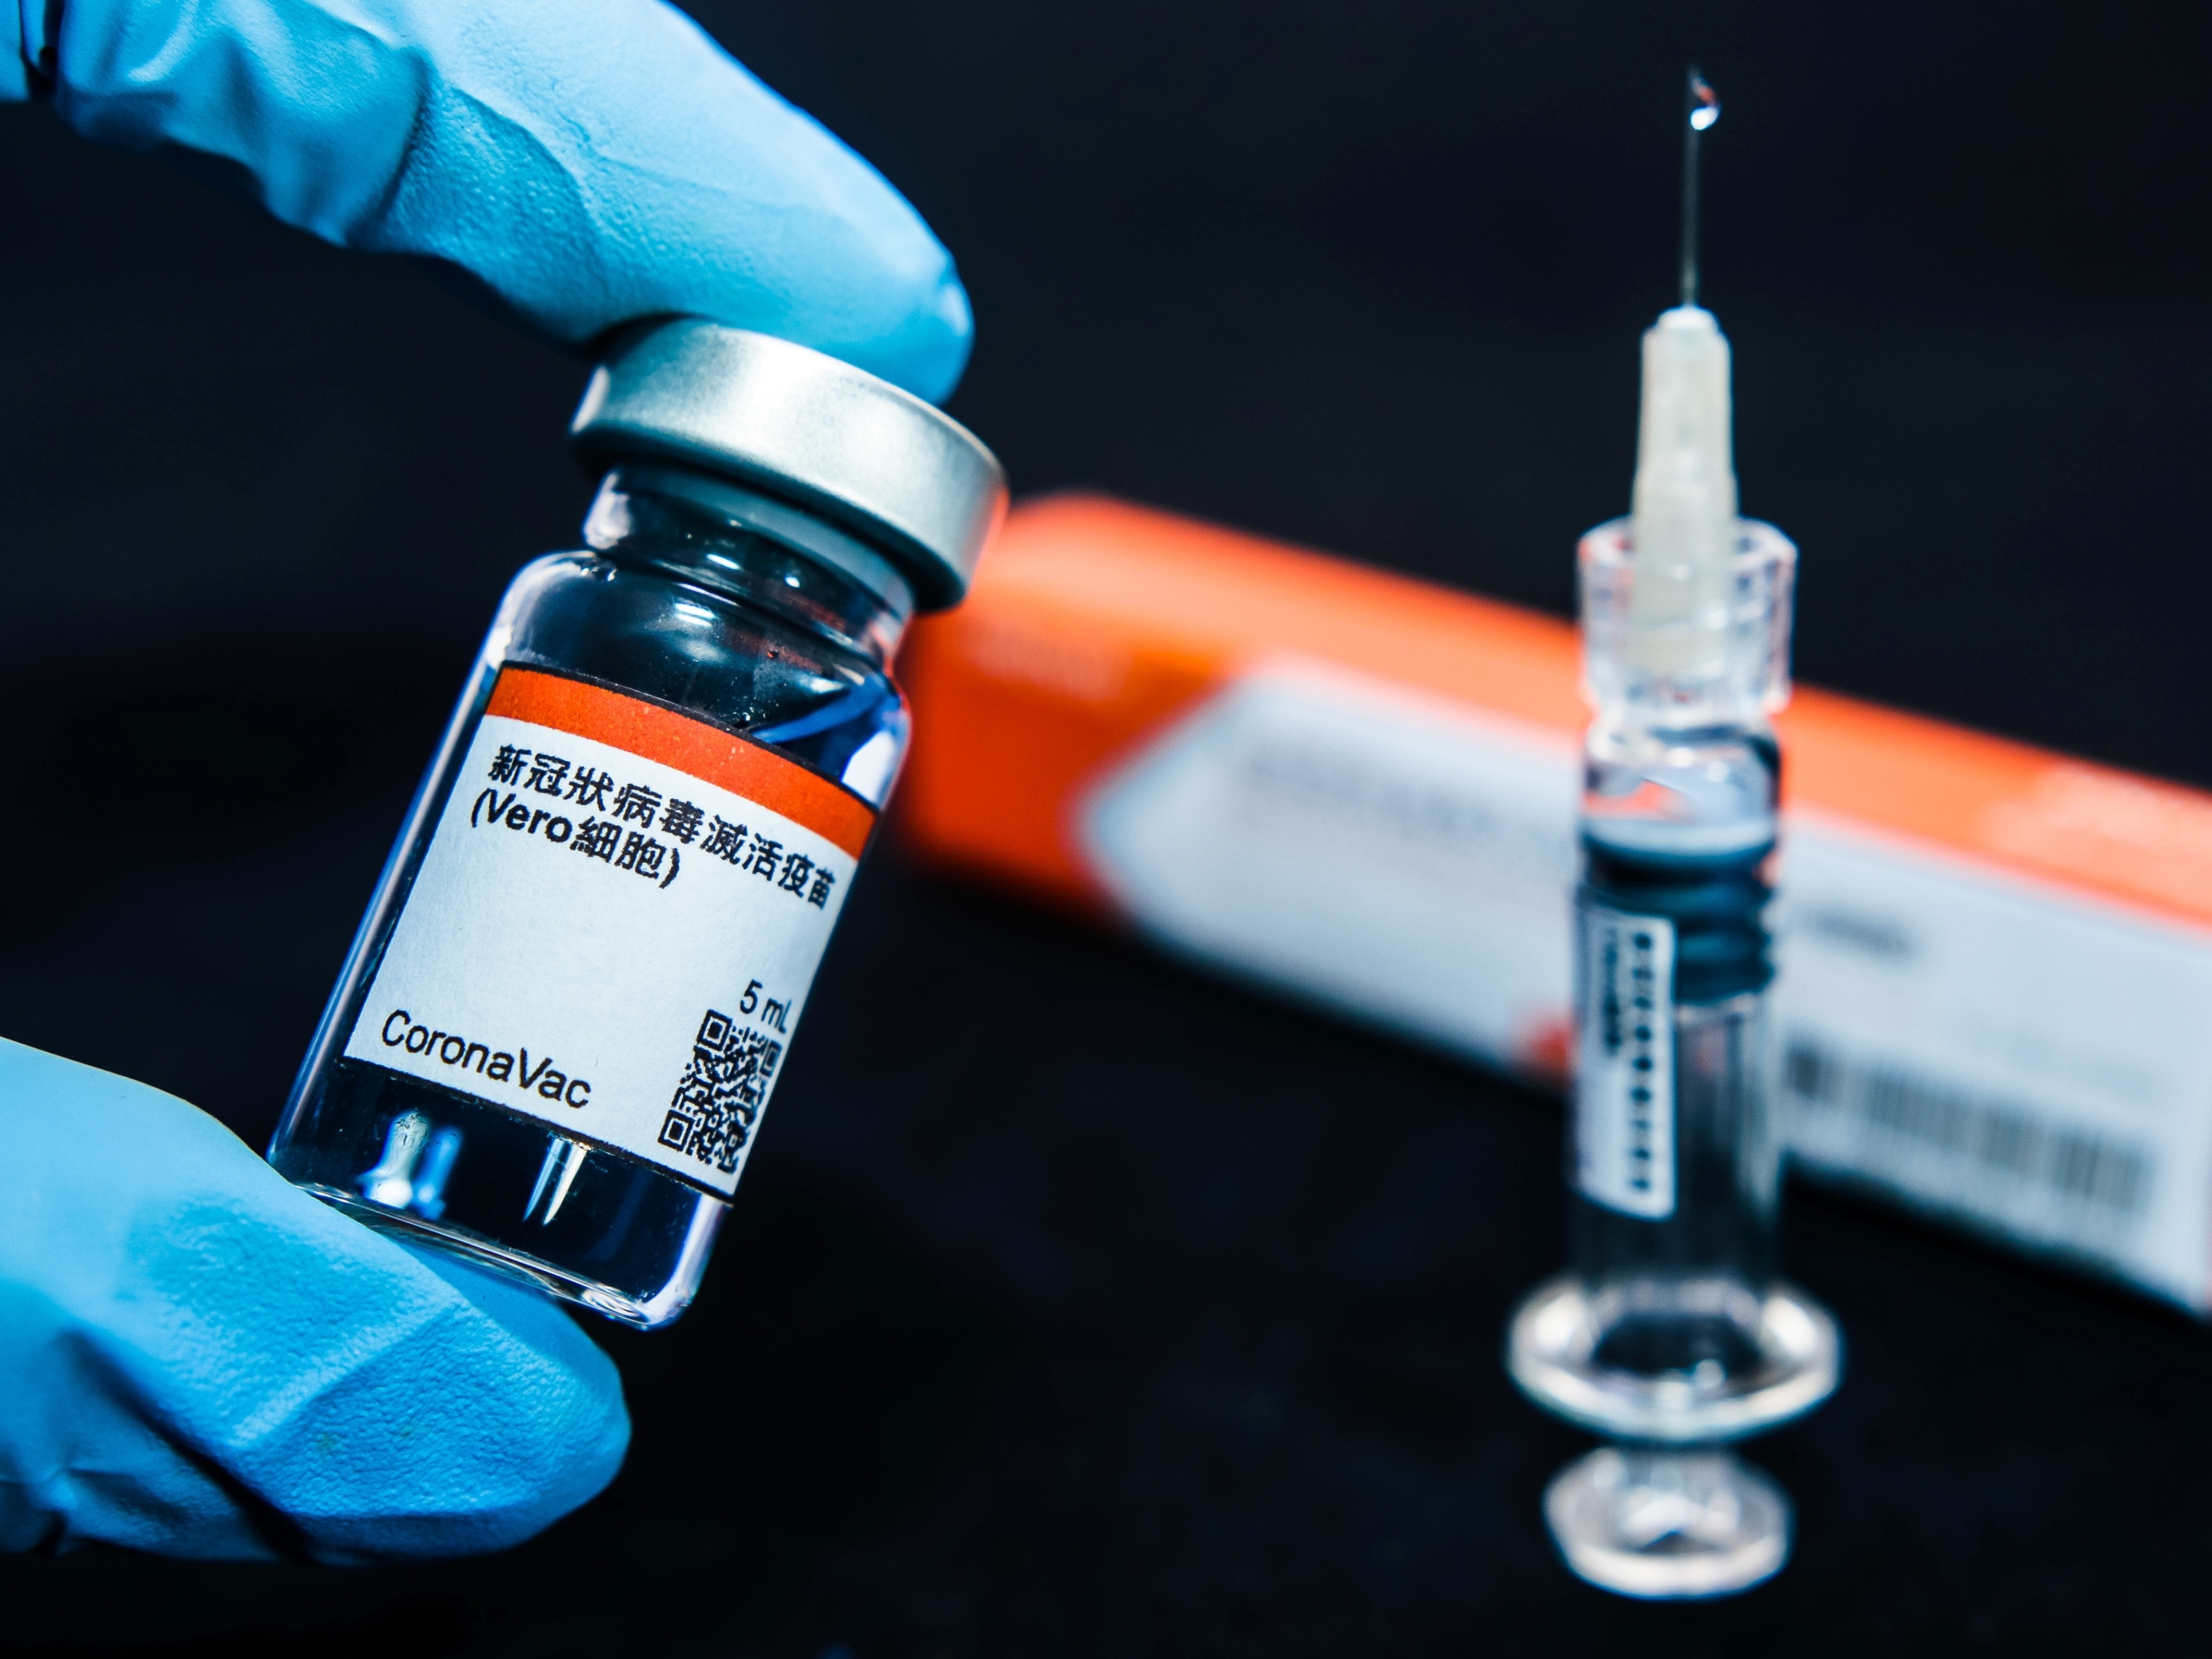 Faz sentido tanta rejeição à vacina chinesa? Compreenda melhor a CoronaVac